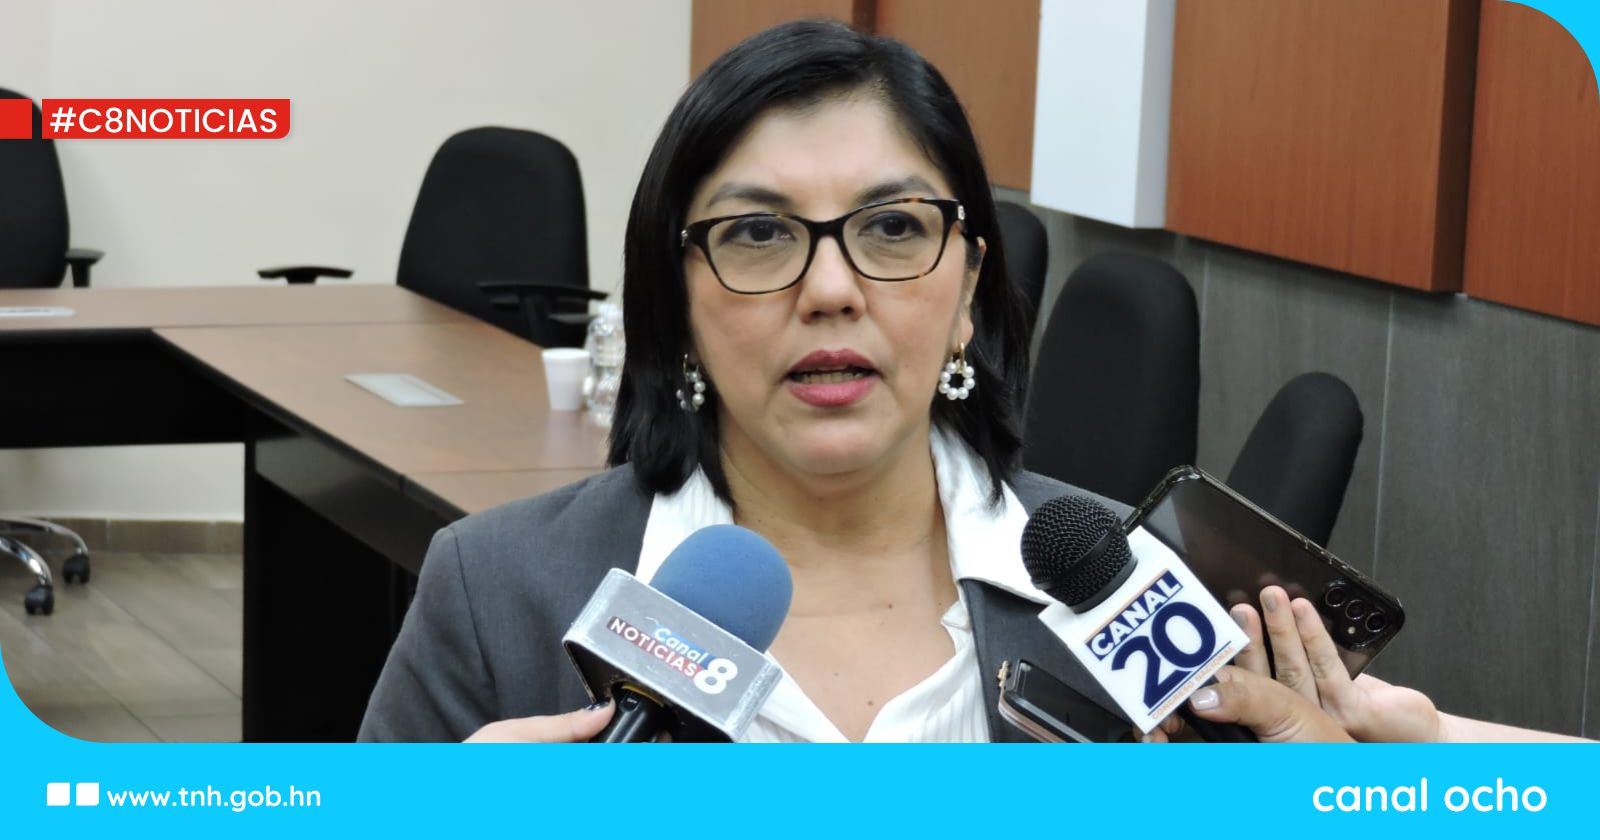 Temas de seguridad son prioridad en agenda legislativa, asegura la congresista Silvia Ayala